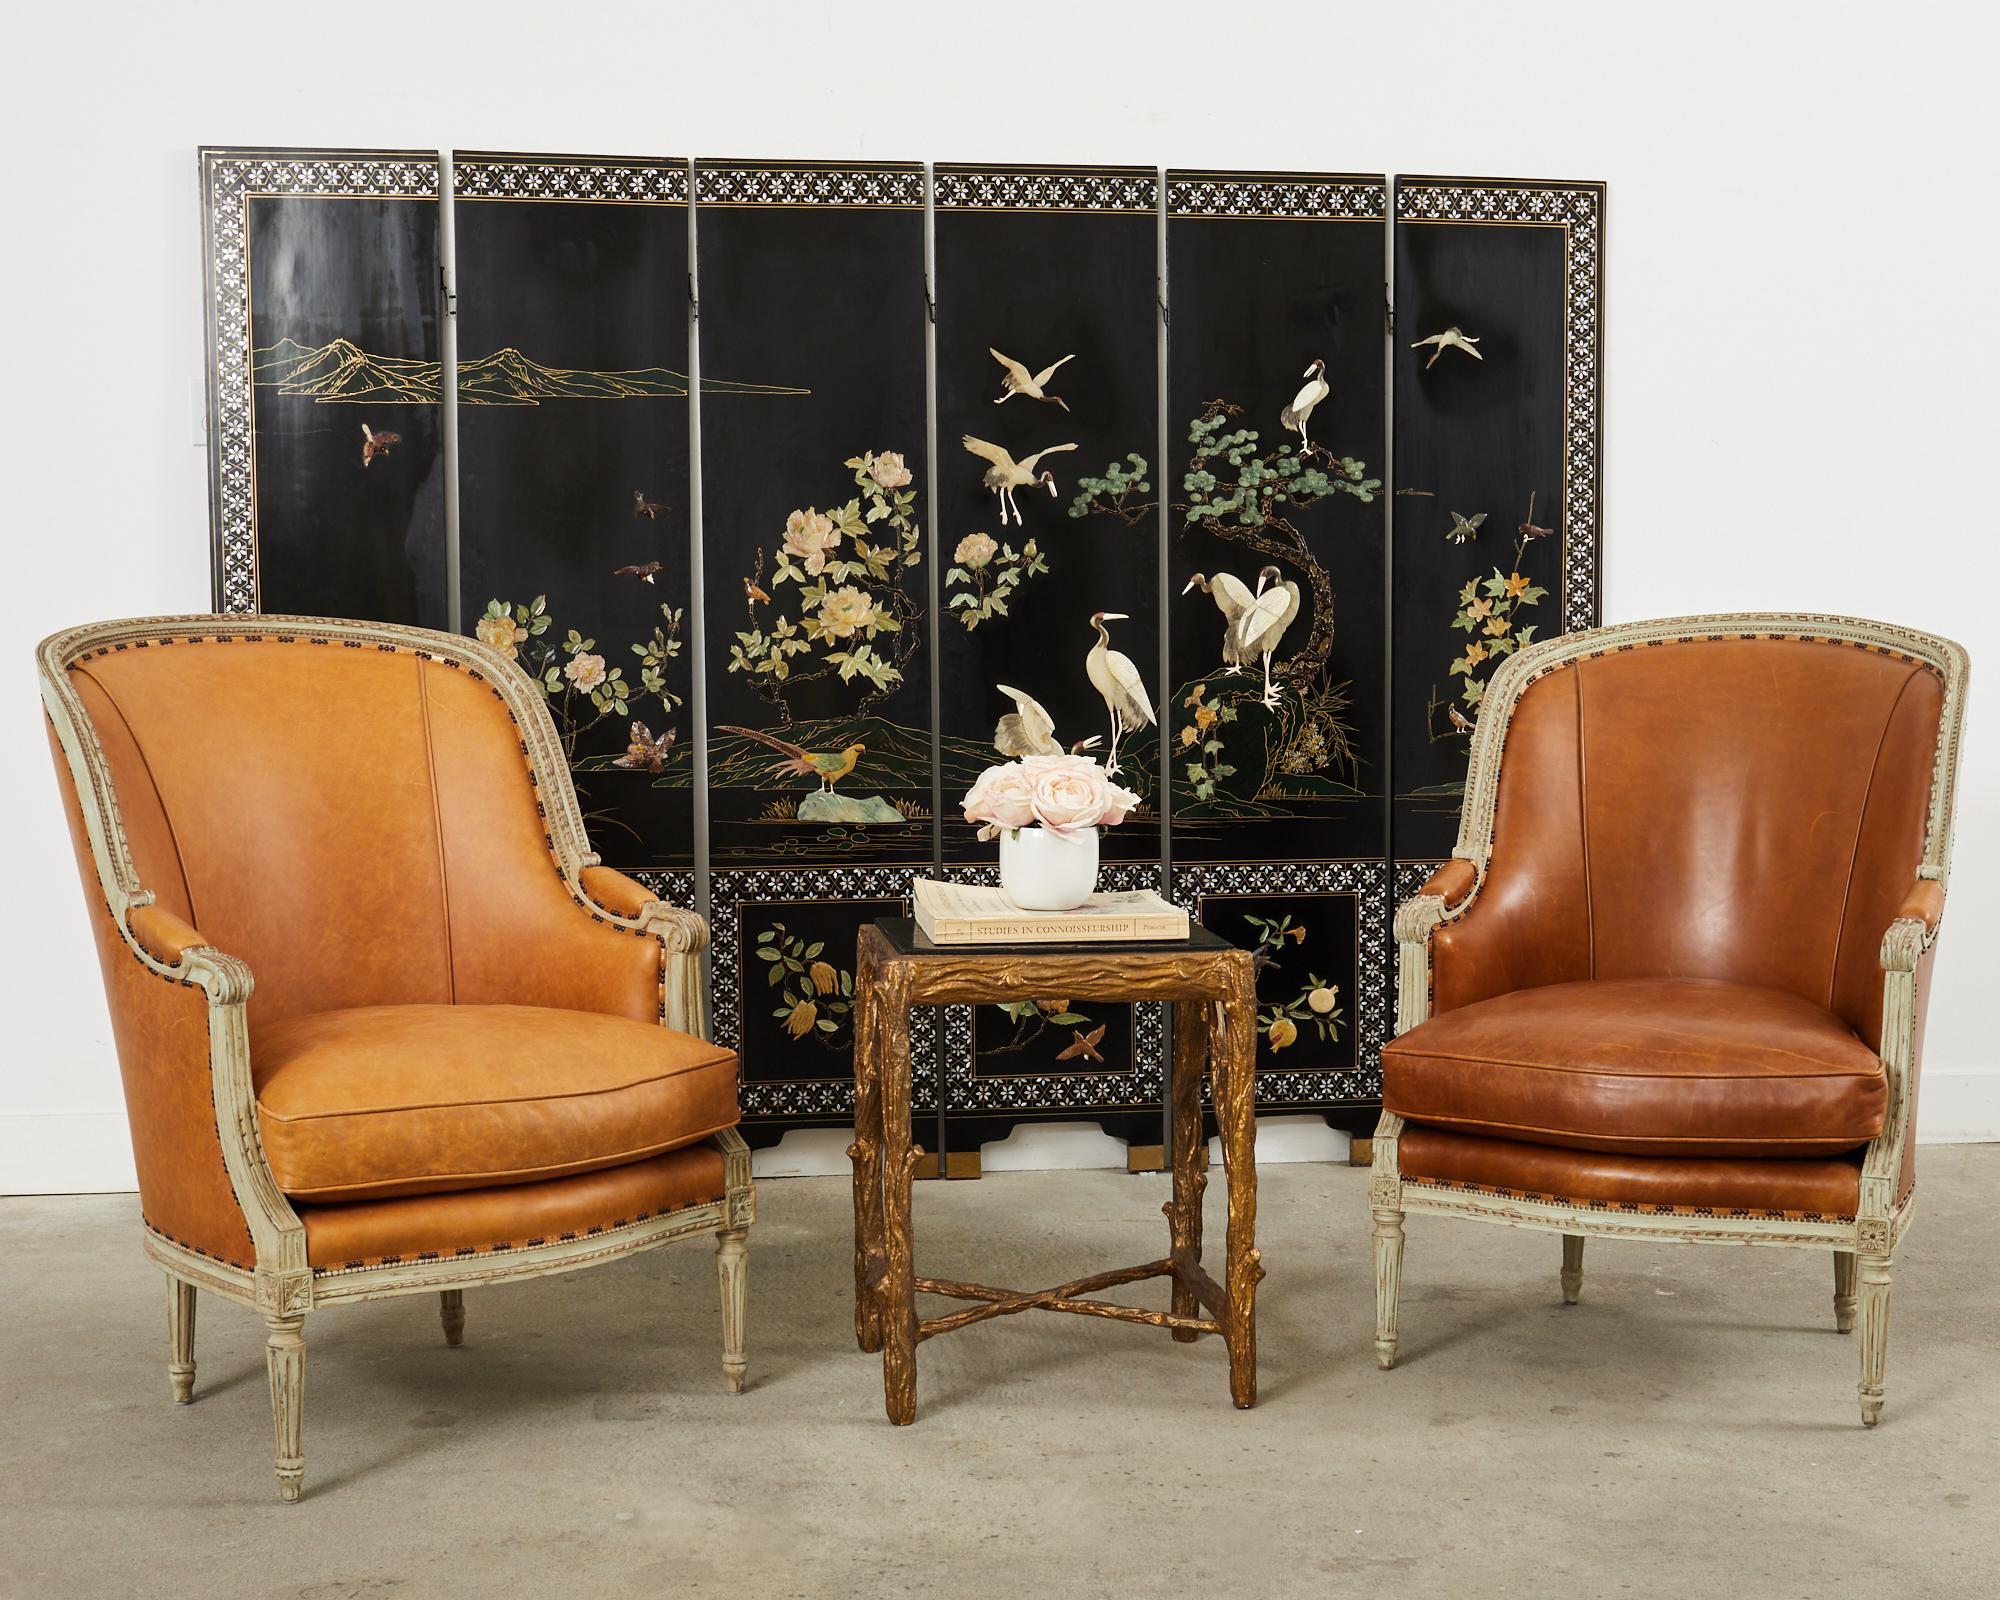 Erstaunlich Paar Lounge-Stühle oder Bergere Sessel in der großen neoklassischen Louis XVI Geschmack von Hendrix Allardyce Los Angeles, CA gemacht. Die Stühle haben einen geschnitzten Rahmen mit einer absichtlich gealterten Patina auf der lackierten